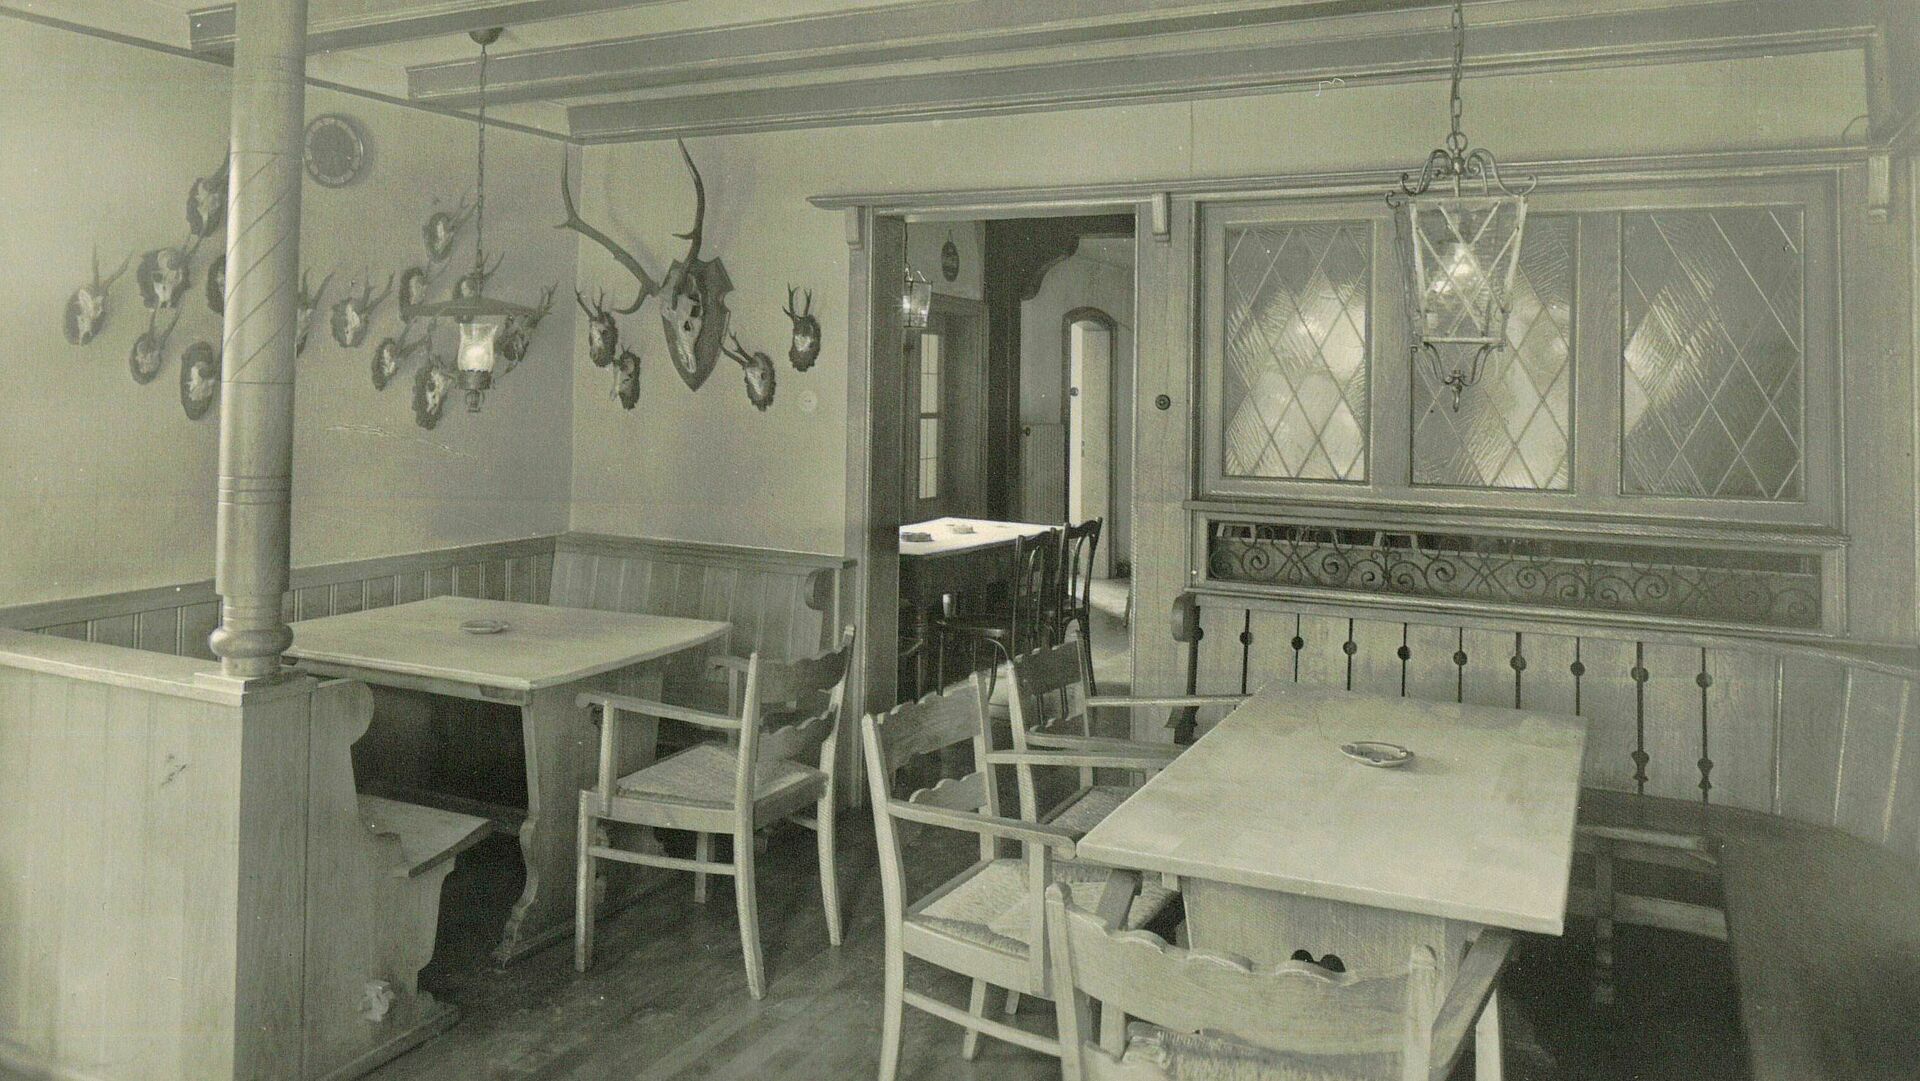 Raum mit Stühlen, Tischen und Bänken, schwarz-weiß Fotografie